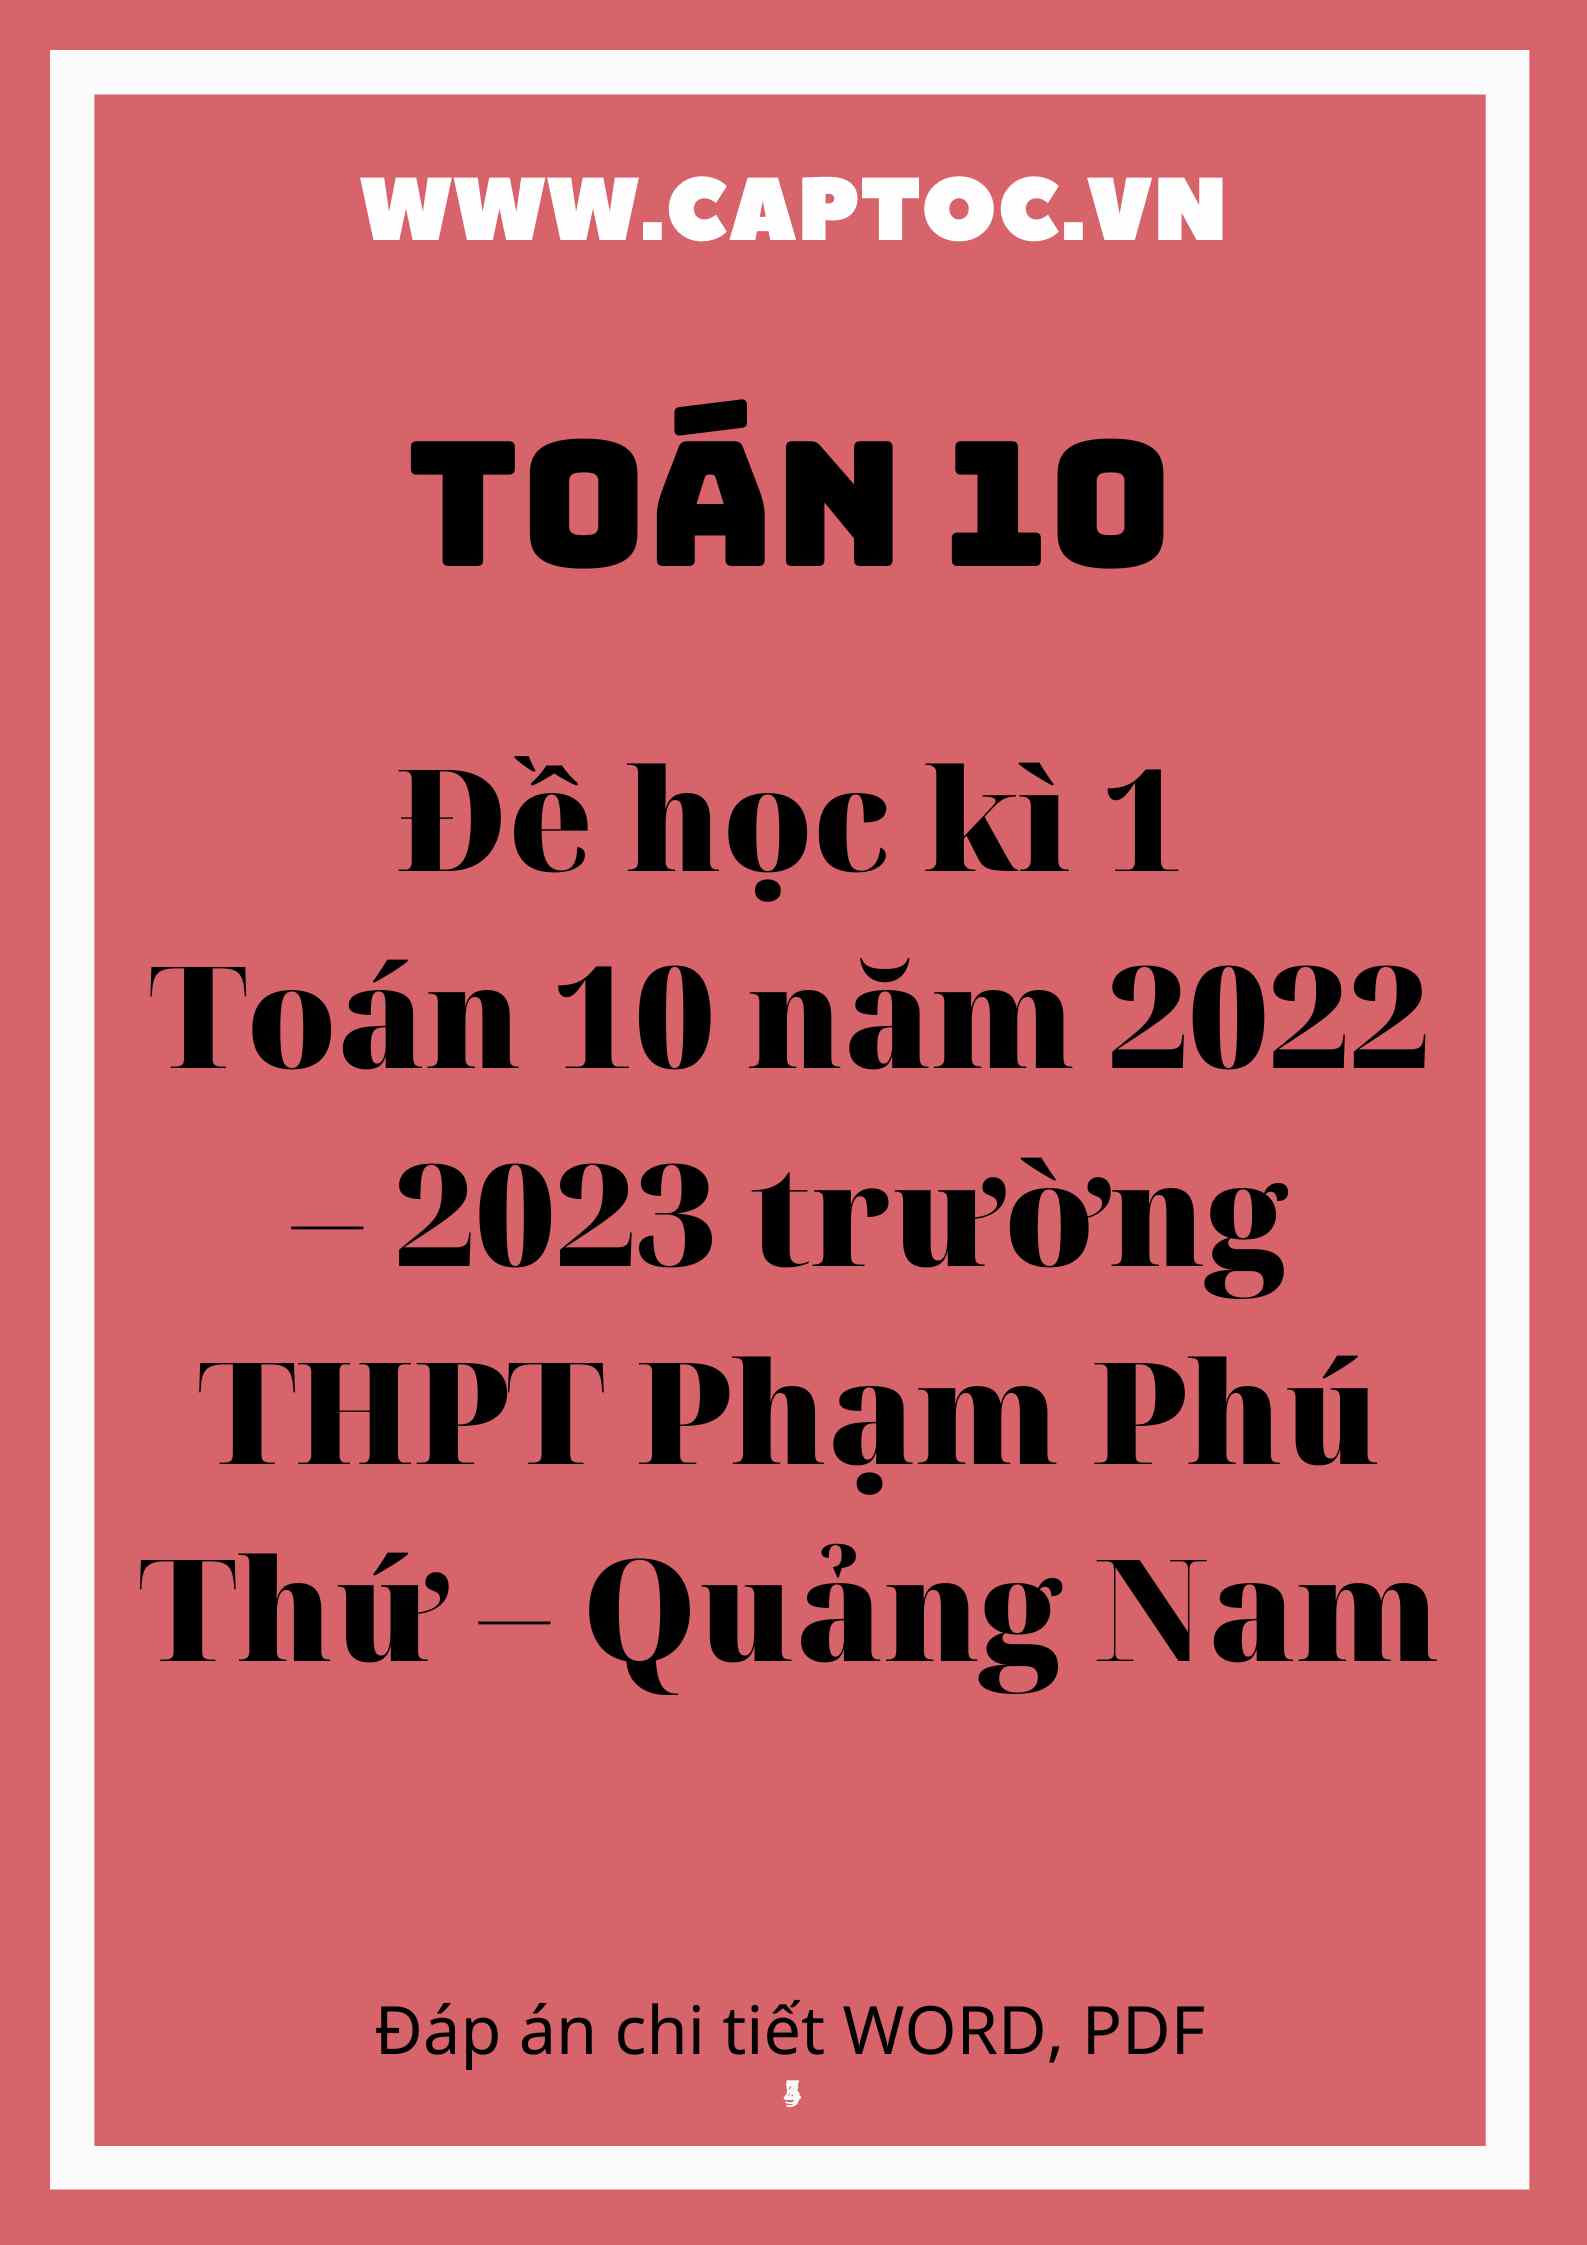 Đề học kì 1 Toán 10 năm 2022 – 2023 trường THPT Phạm Phú Thứ – Quảng Nam